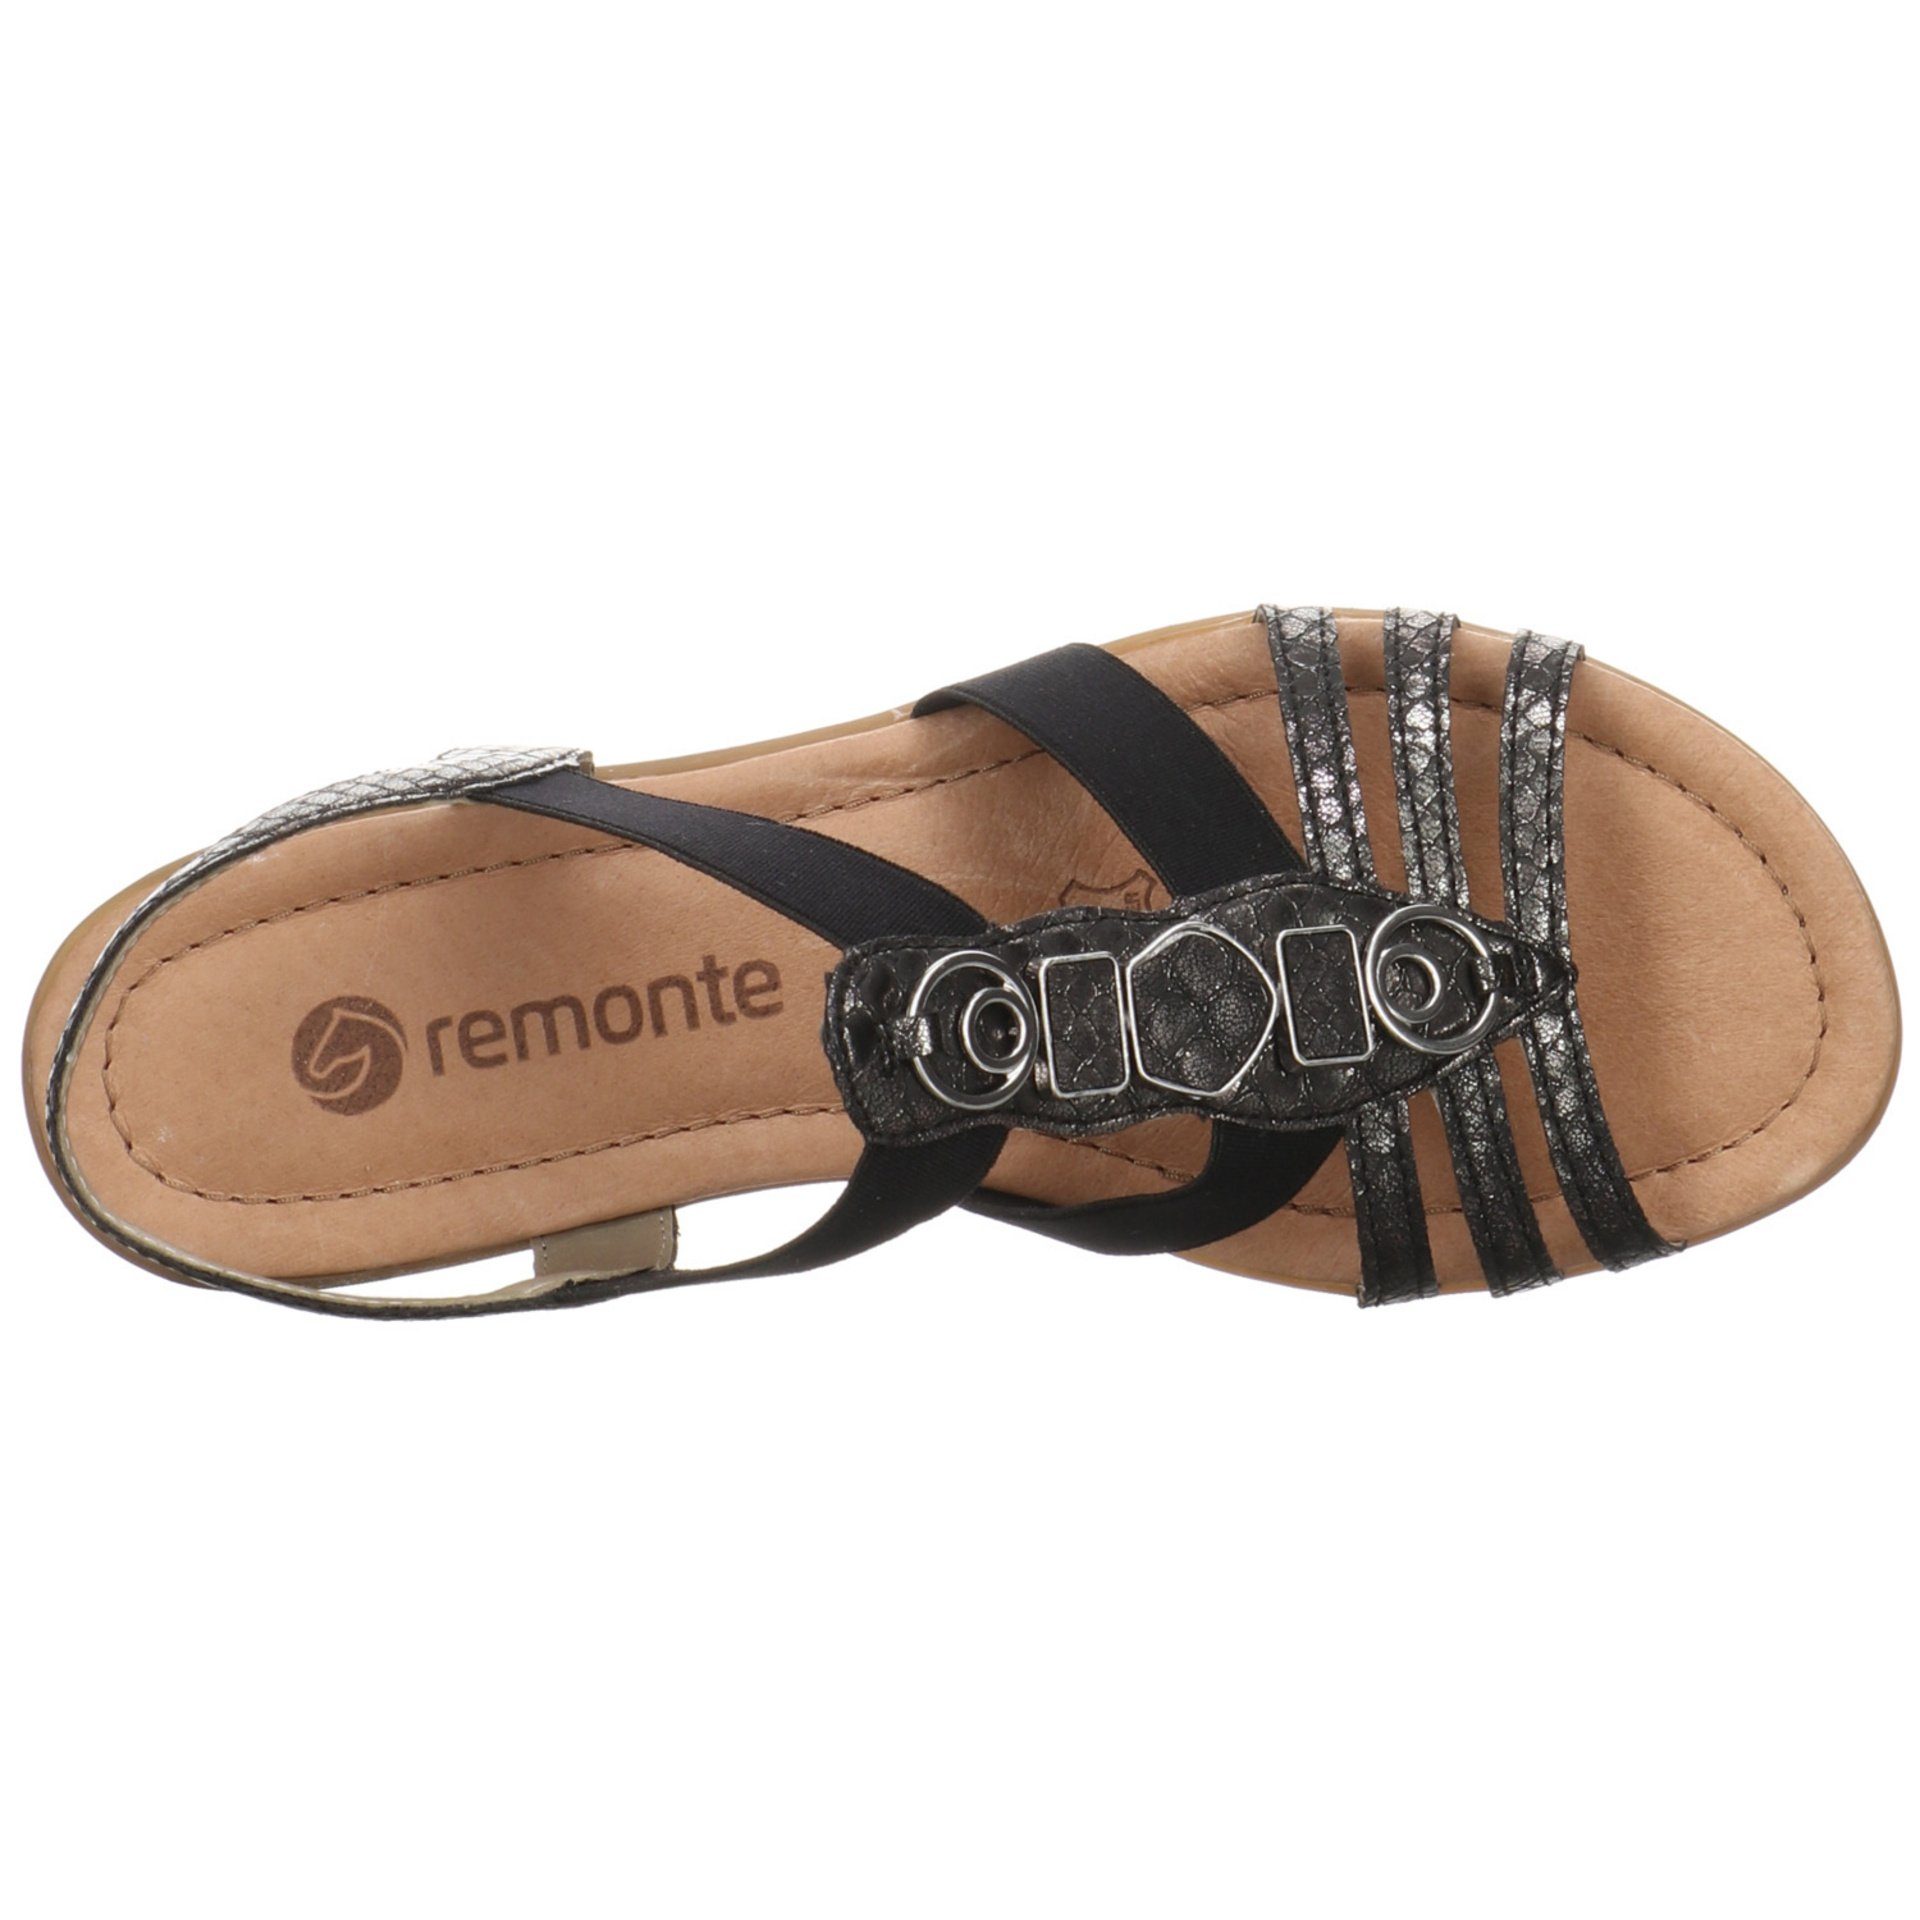 Remonte Damen Sandalen Sandale Fußbett schwarz/schwarz Bequem Sandale Synthetikkombination Freizeit